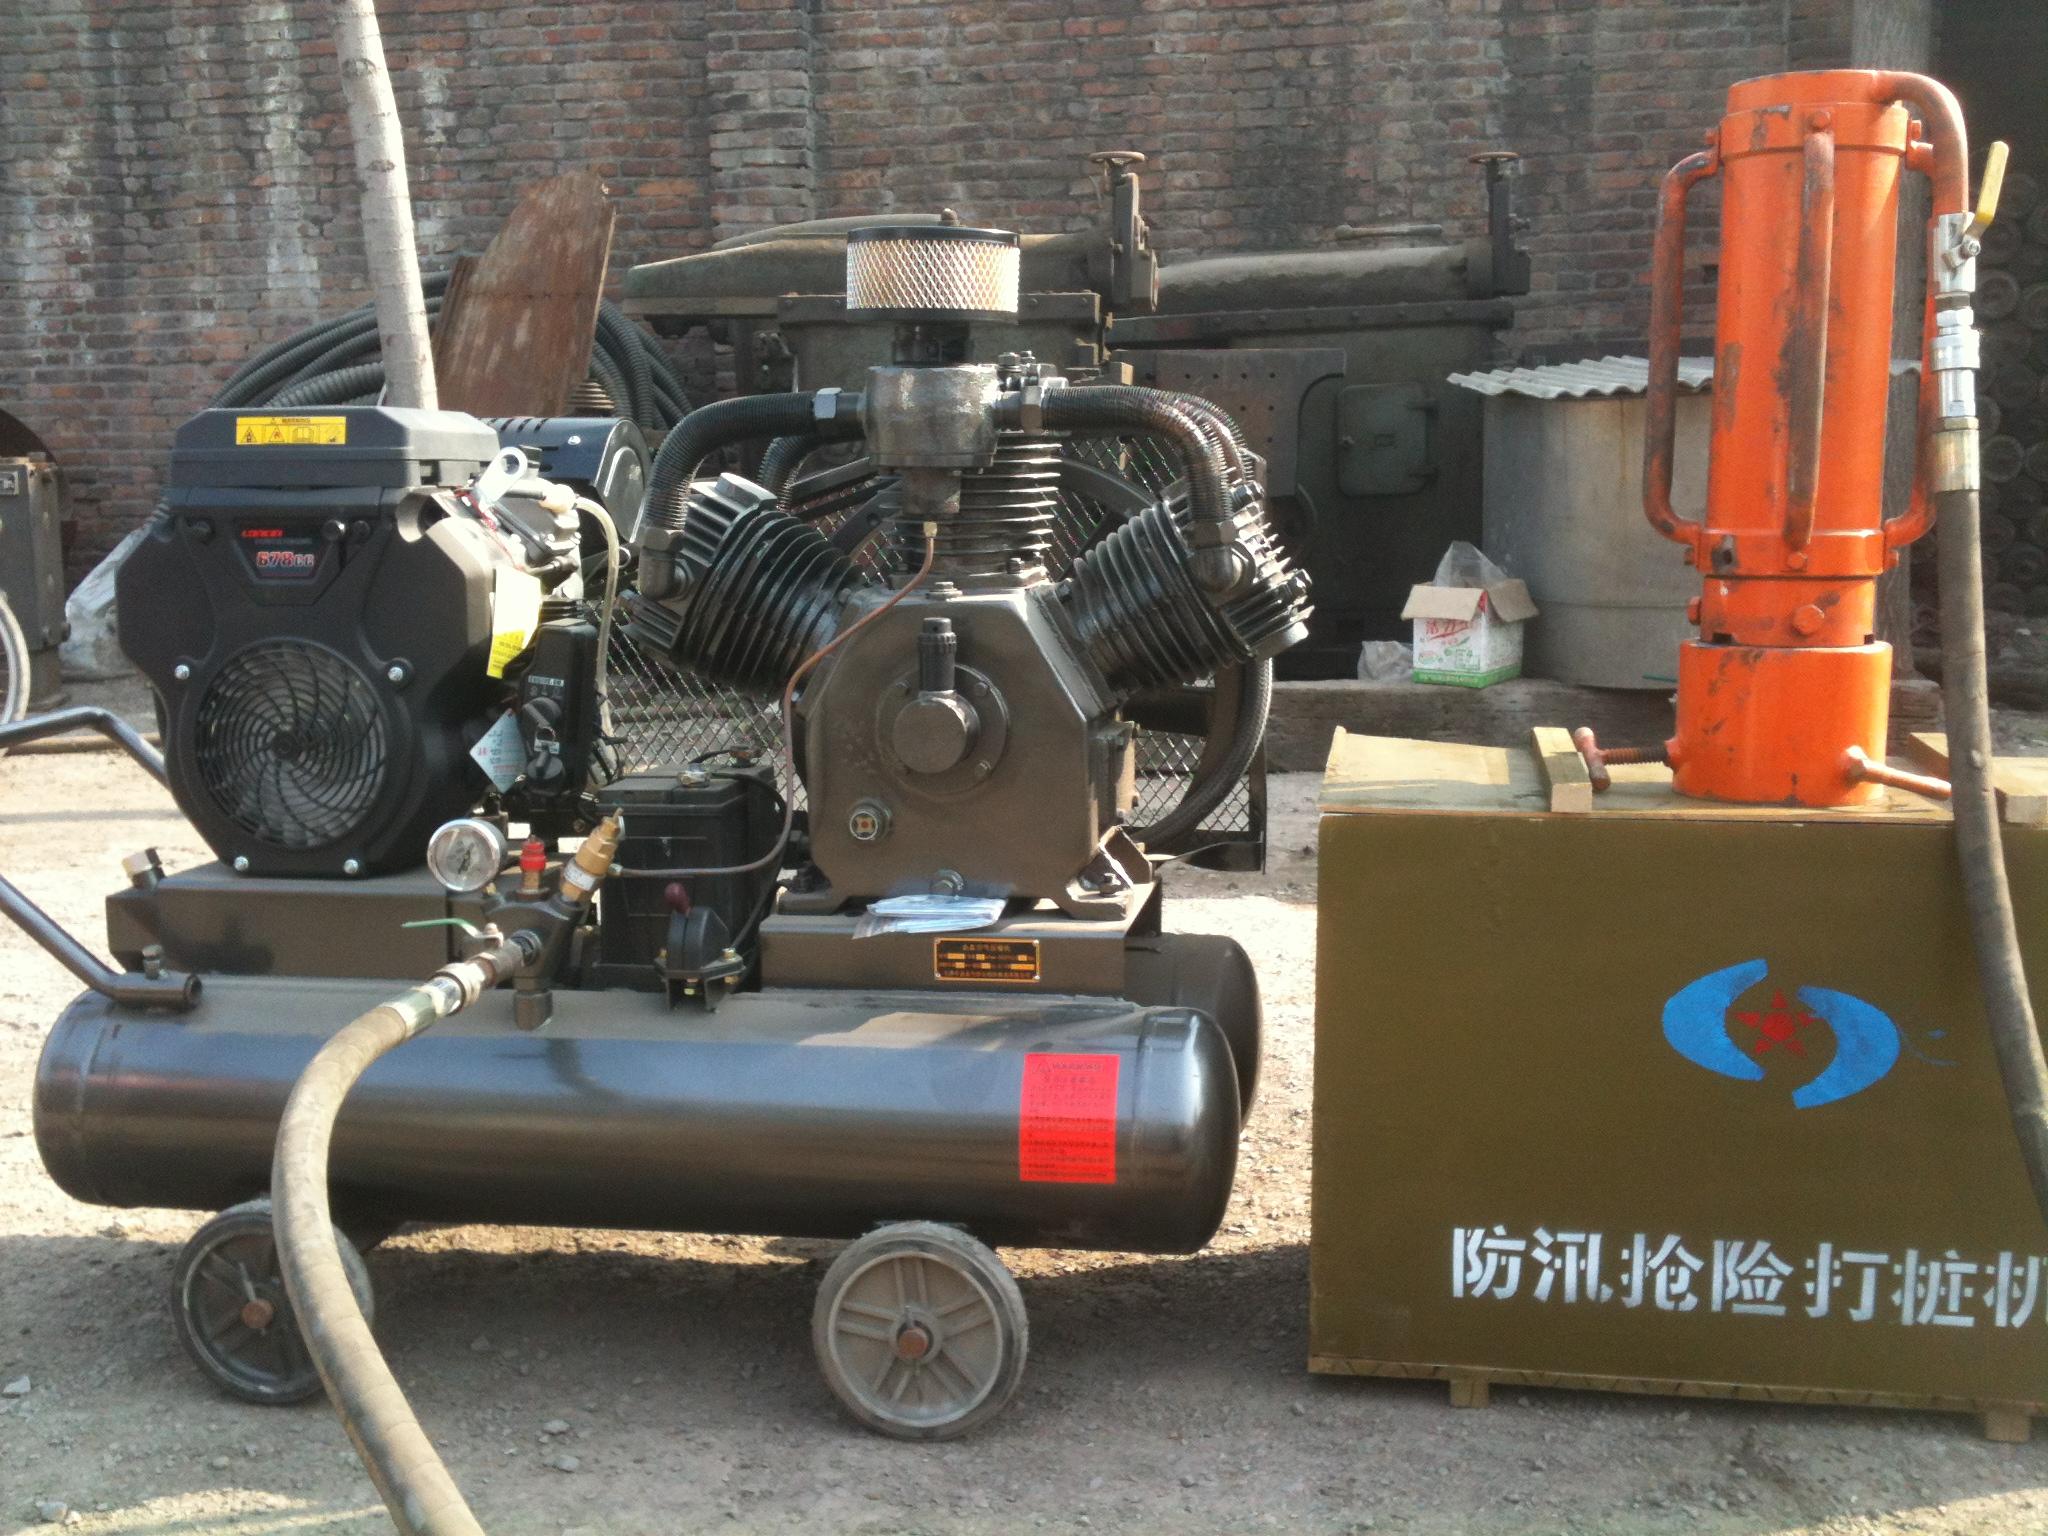 便携式植桩机160;便携式气动植桩机 便携式多功能植桩机